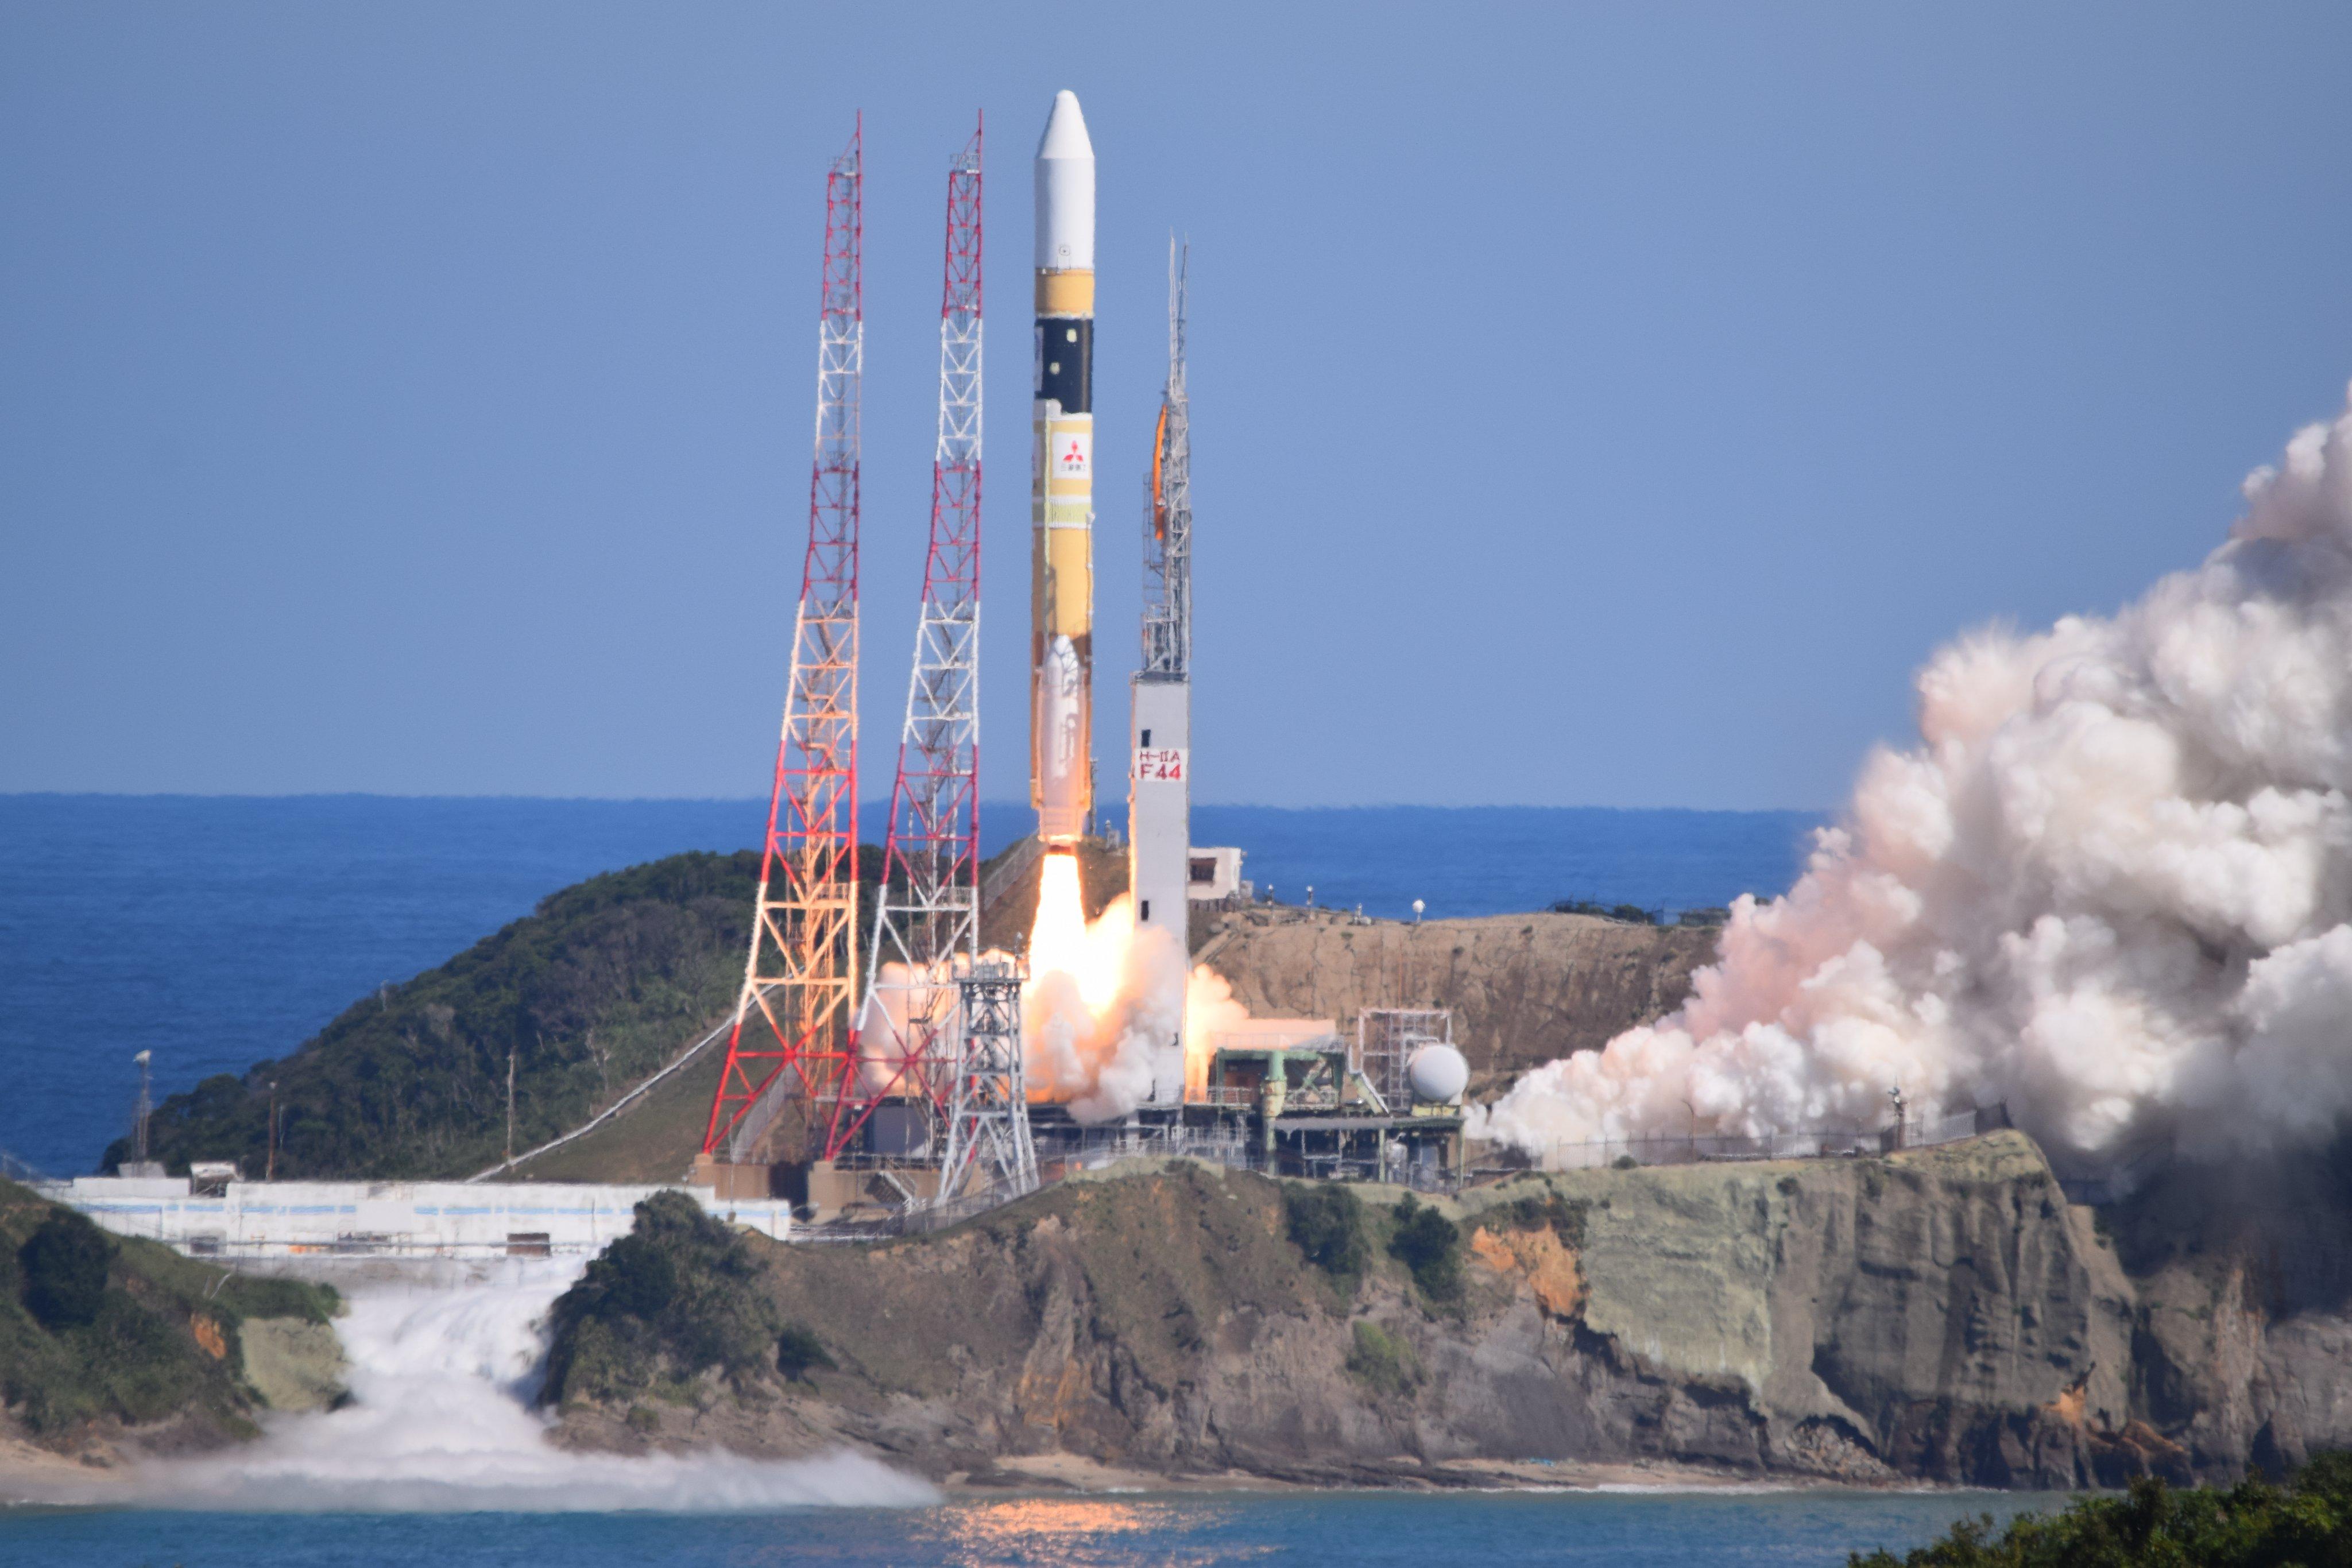 Japanese H-IIA rocket launch